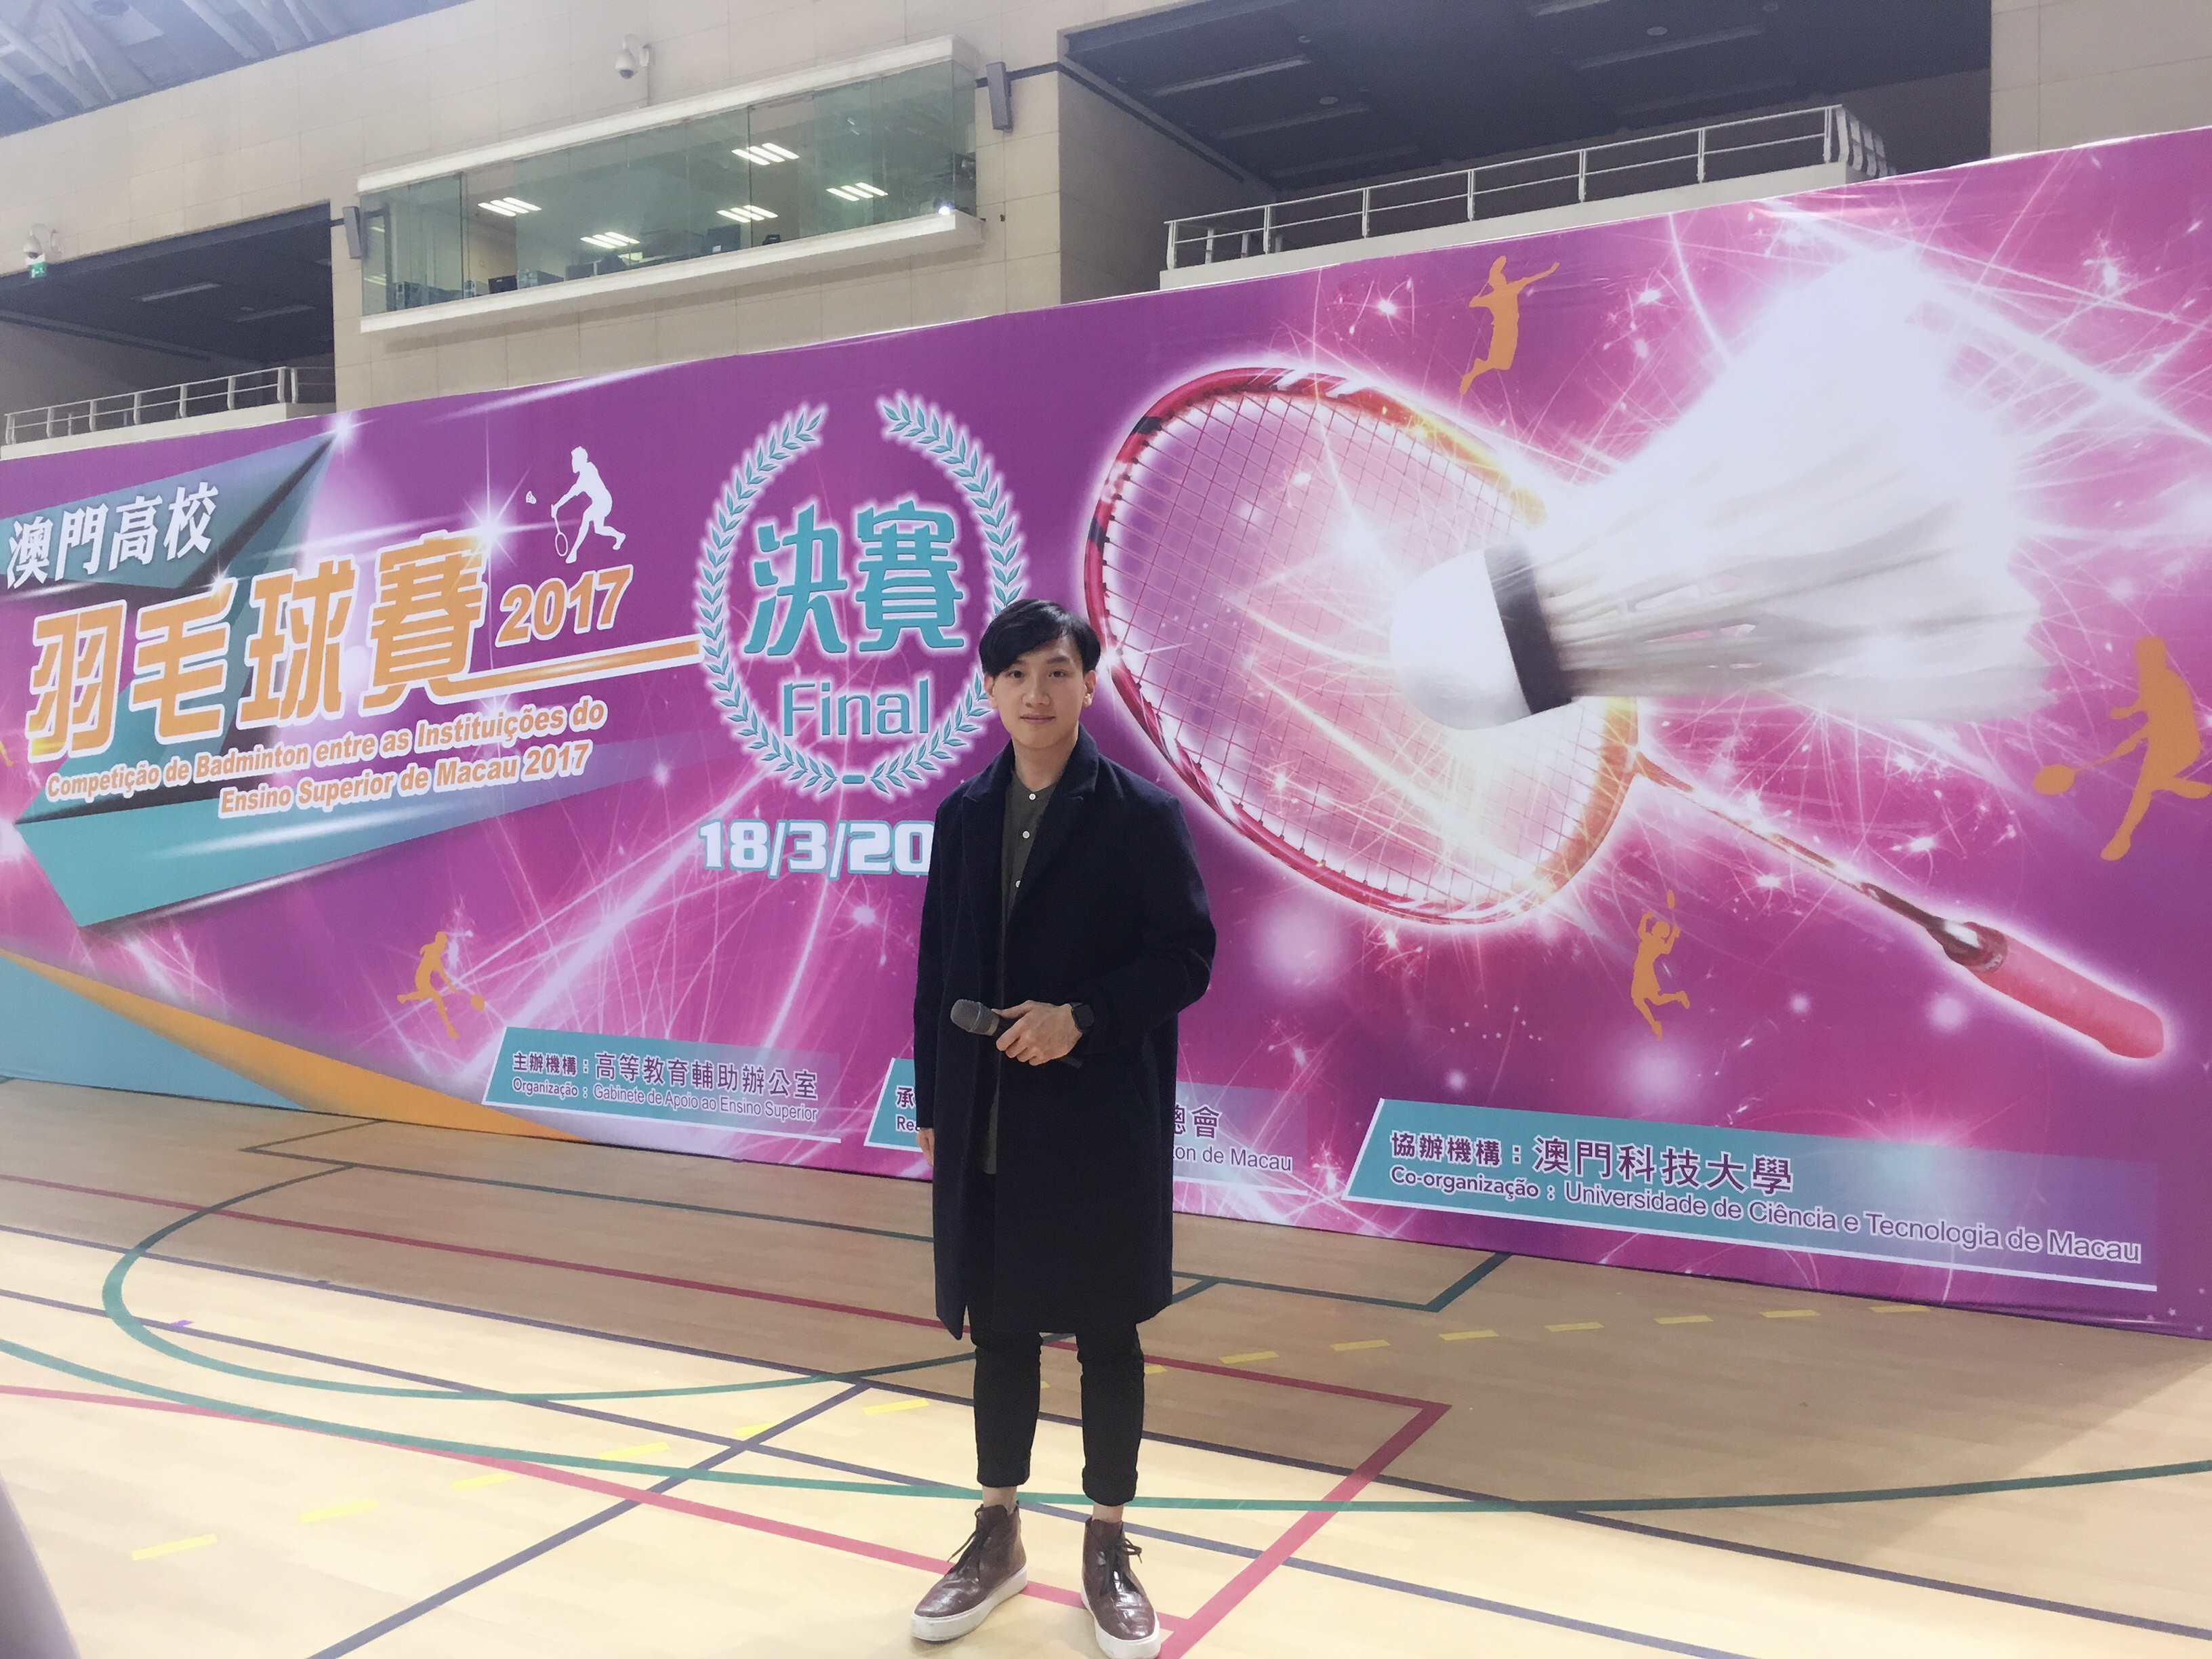 周啓陽 Elvis Chao之司儀主持紀錄: 2017澳門高校羽毛球賽